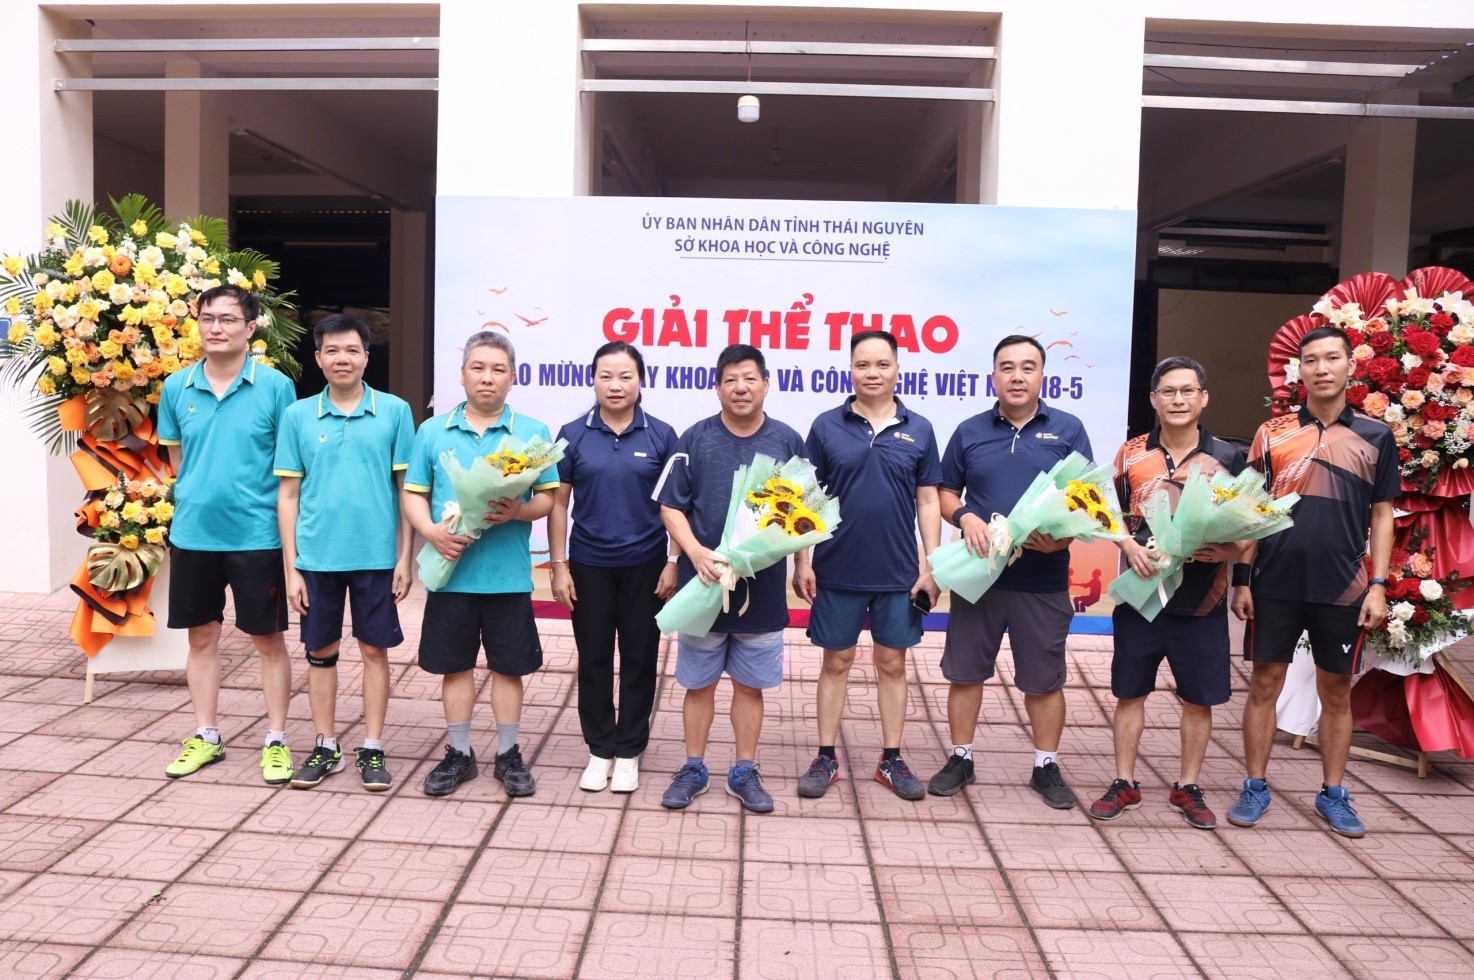 Giải thể thao chào mừng Ngày Khoa học và Công nghệ Việt Nam 18-5